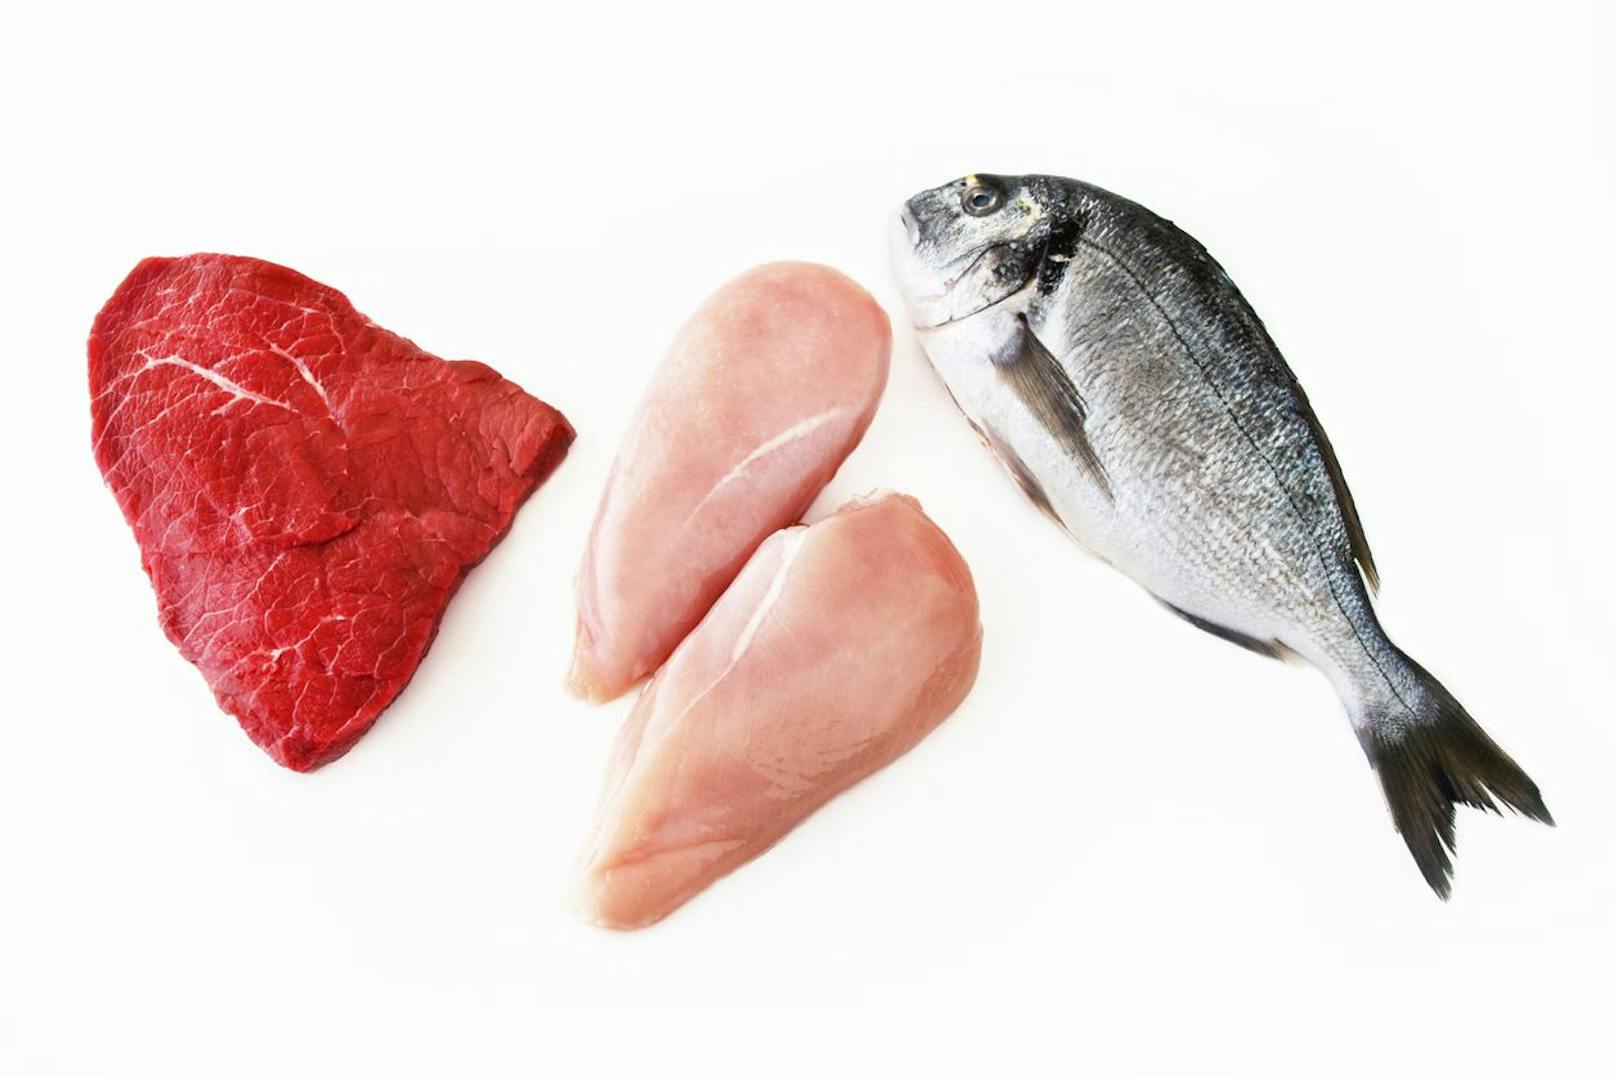 <strong>Rohes Fleisch und roher Fisch:</strong> Auch Reis, rohes Fleisch und roher Fisch sind leicht verderblich – die Mikrowelle erhitzt diese Lebensmittel zu unregelmäßig. Vor allem rohes Fleisch und roher Fisch müssen jedoch dringend gleichmäßig bei über 70 Grad erhitzt werden – was bei der Mikrowelle nicht geschieht – Salmonellen und Listerien könnten nach dem Erwärmen (noch immer) in den Speisen erhalten sein. Deshalb Fleisch und Fisch lieber in der Pfanne oder im Ofen garen.